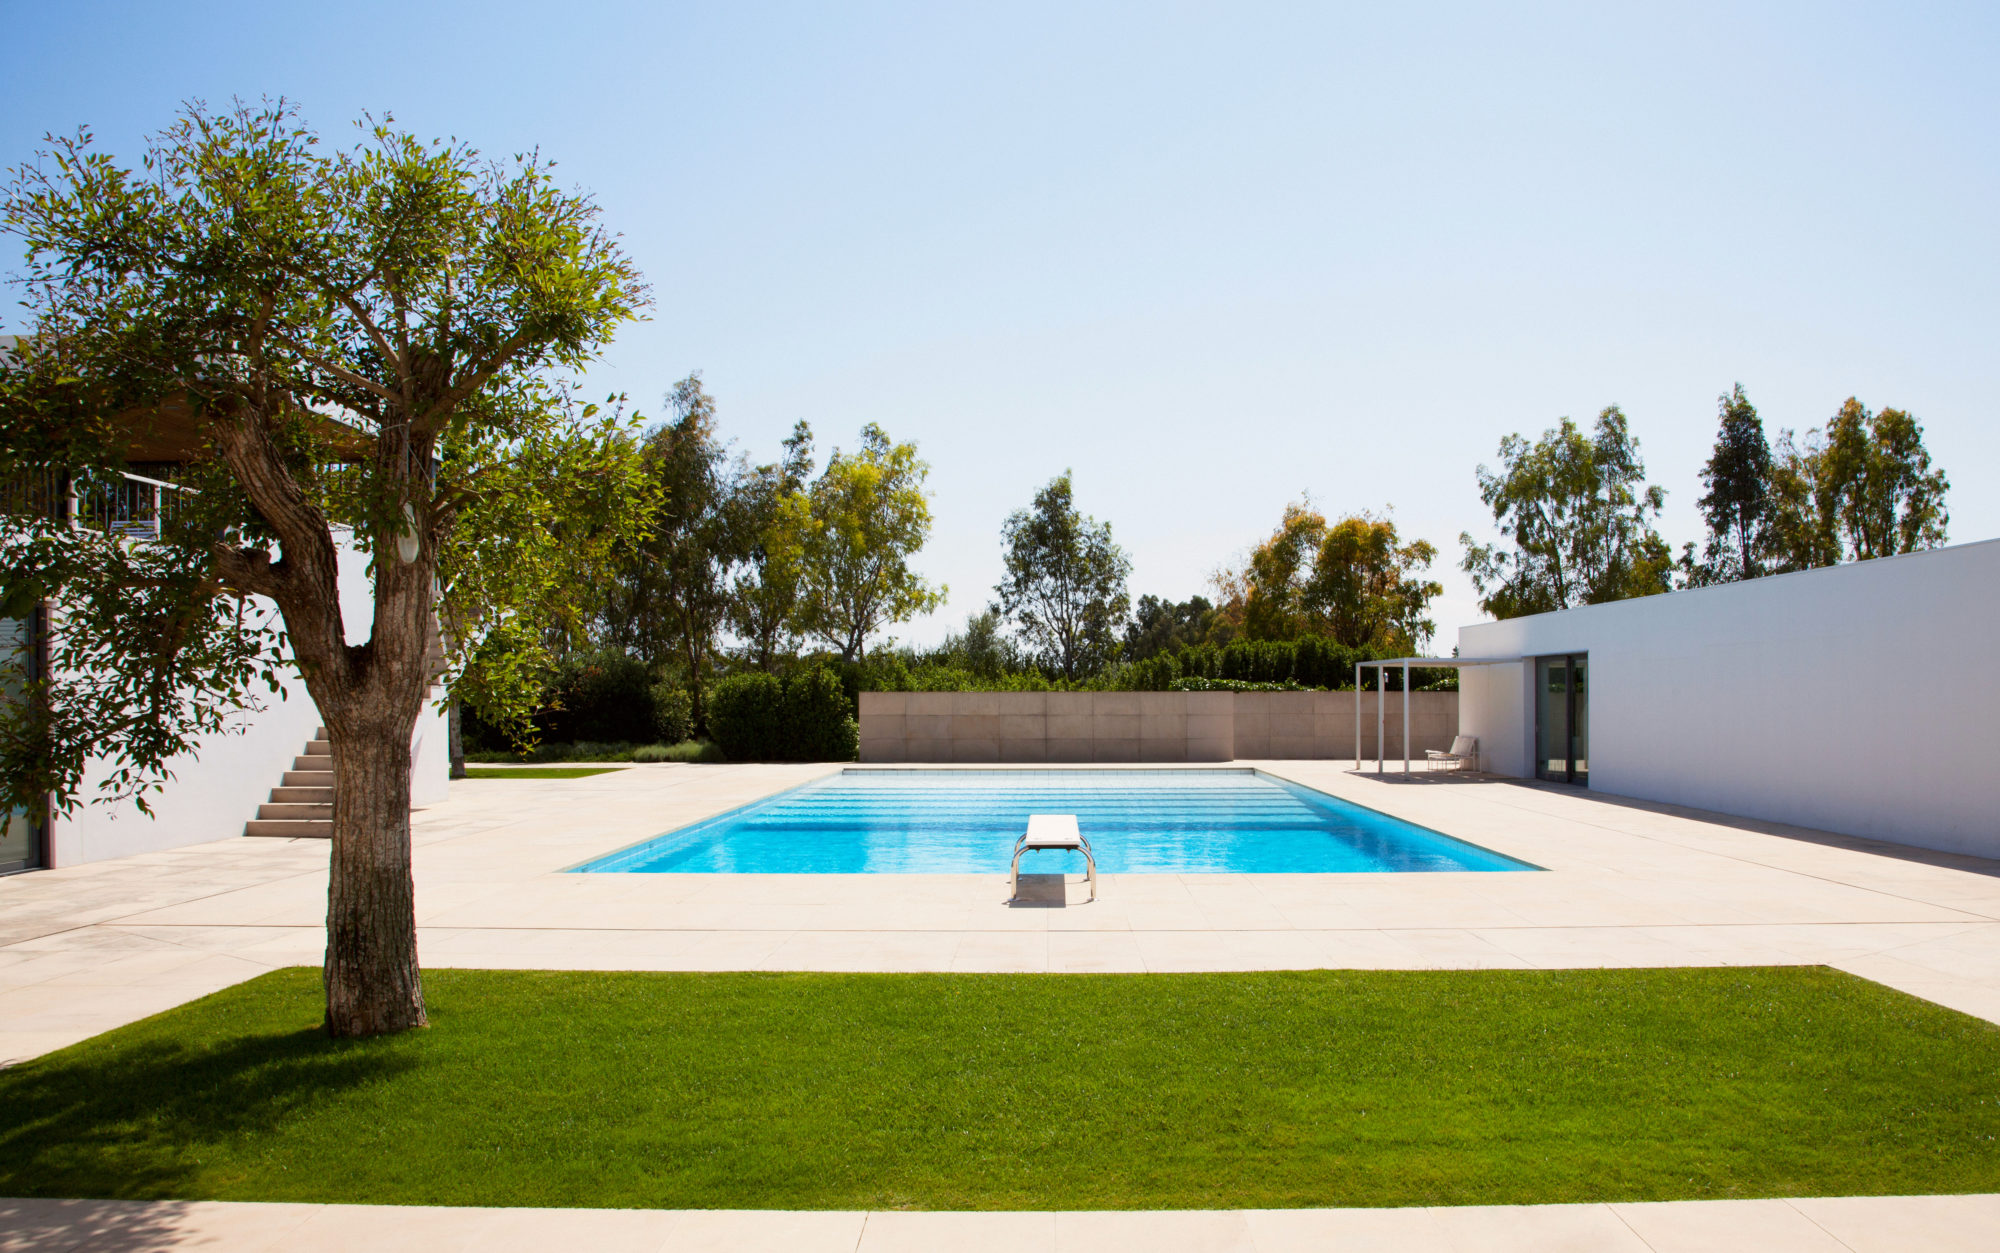 Lire la suite à propos de l’article Pisciniste Bordeaux : Musset Pool Design construit et rénove votre piscine